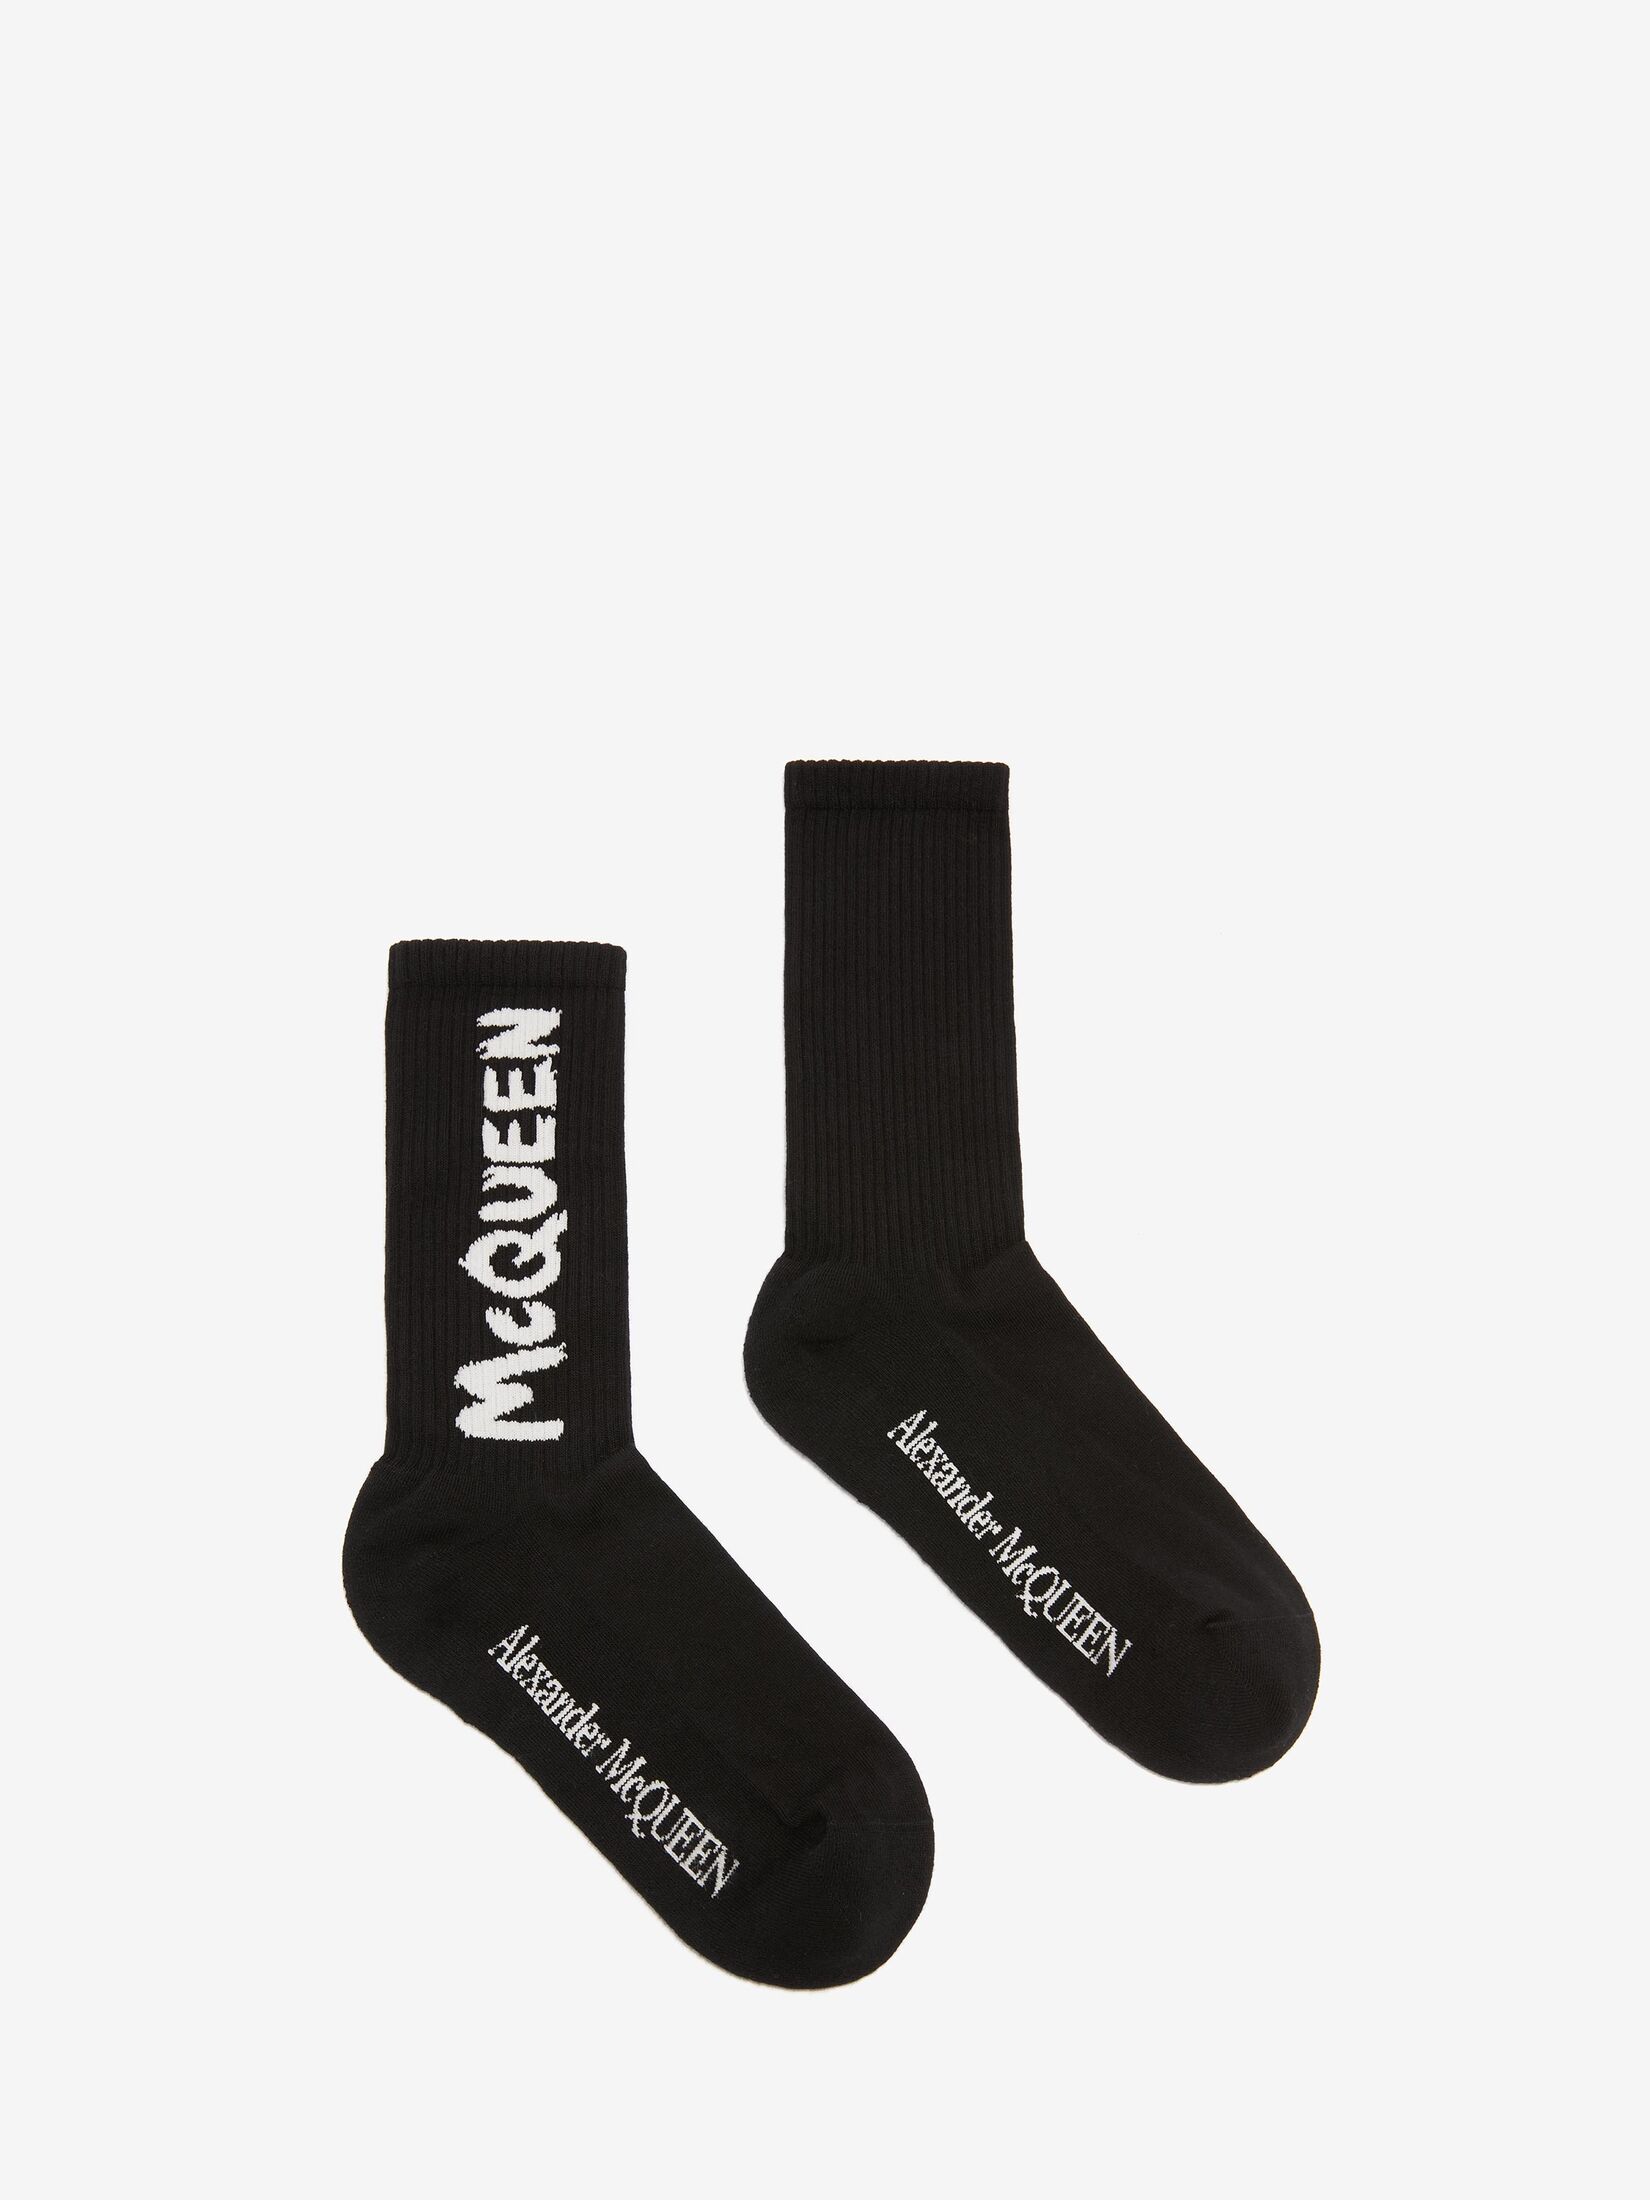 McQueen Graffiti襪子